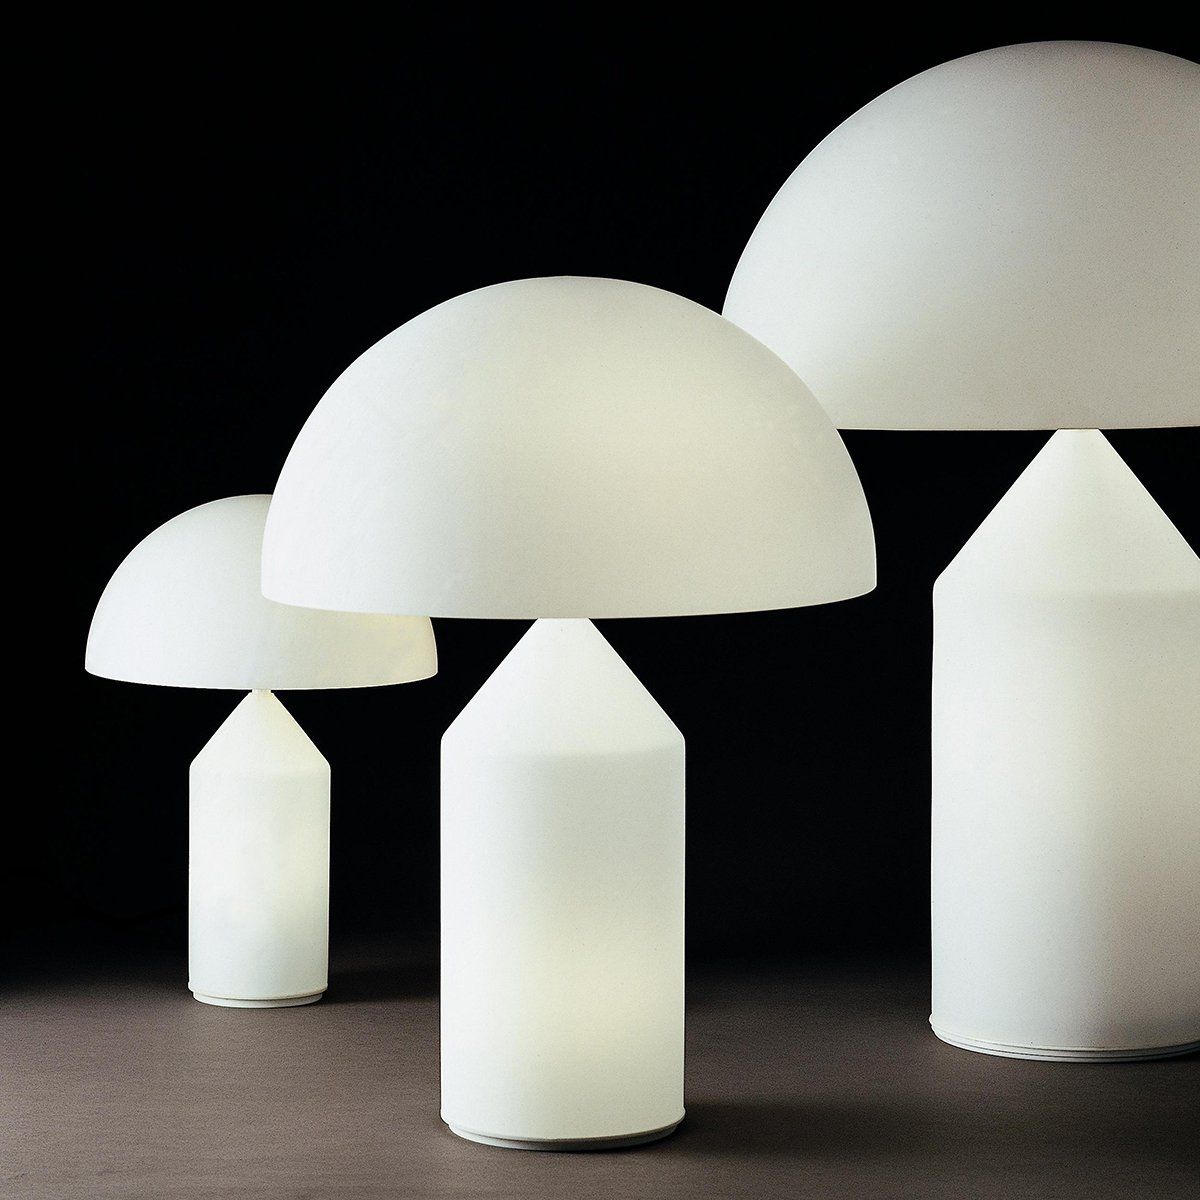 Lampe design ATOLLO (H70cm) en verre de Murano opale blanc